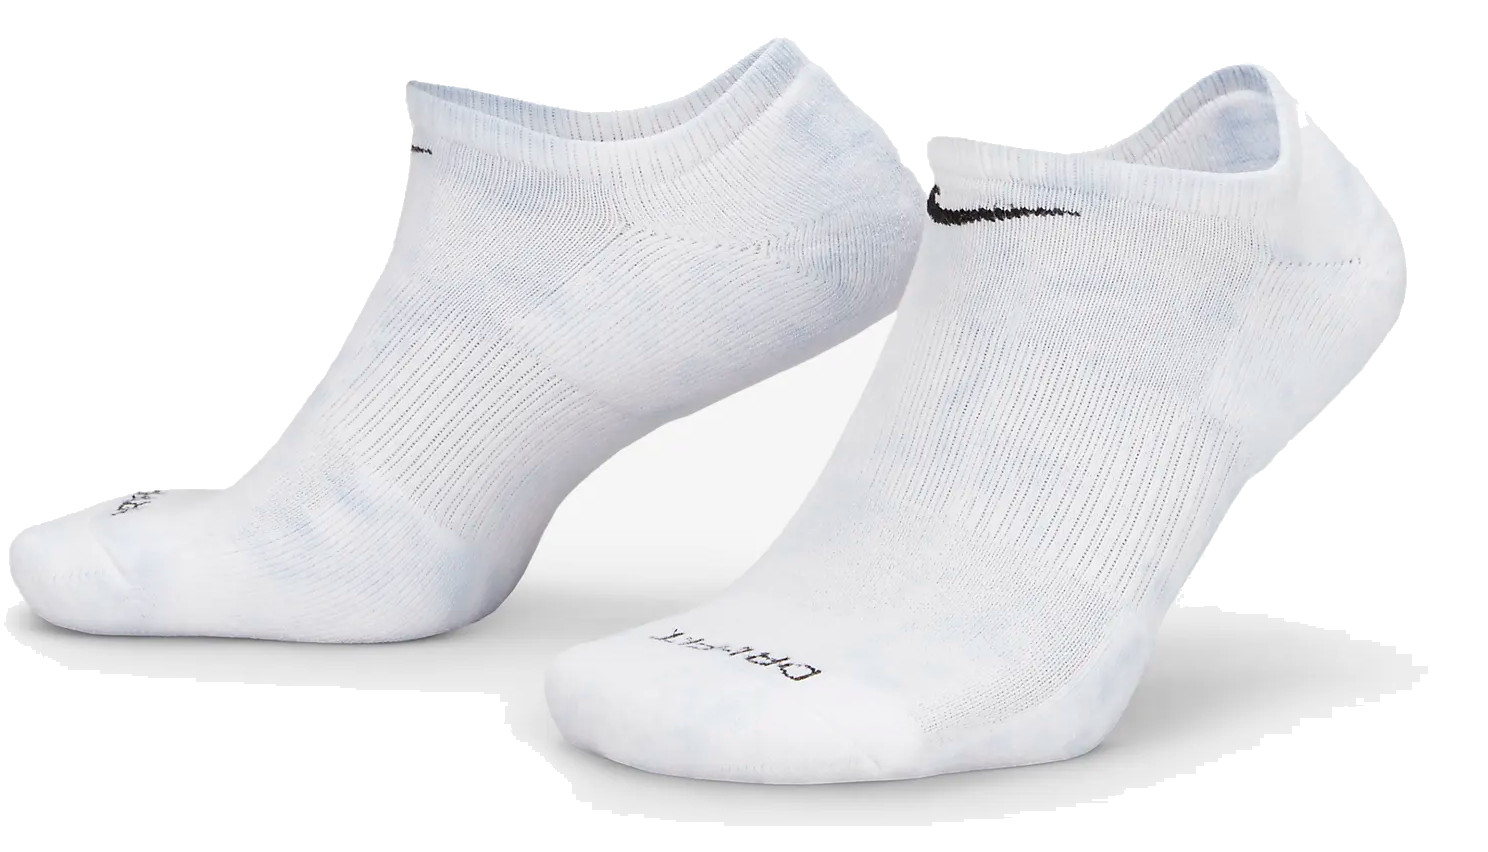 Ponožky Nike Everyday Plus 3P